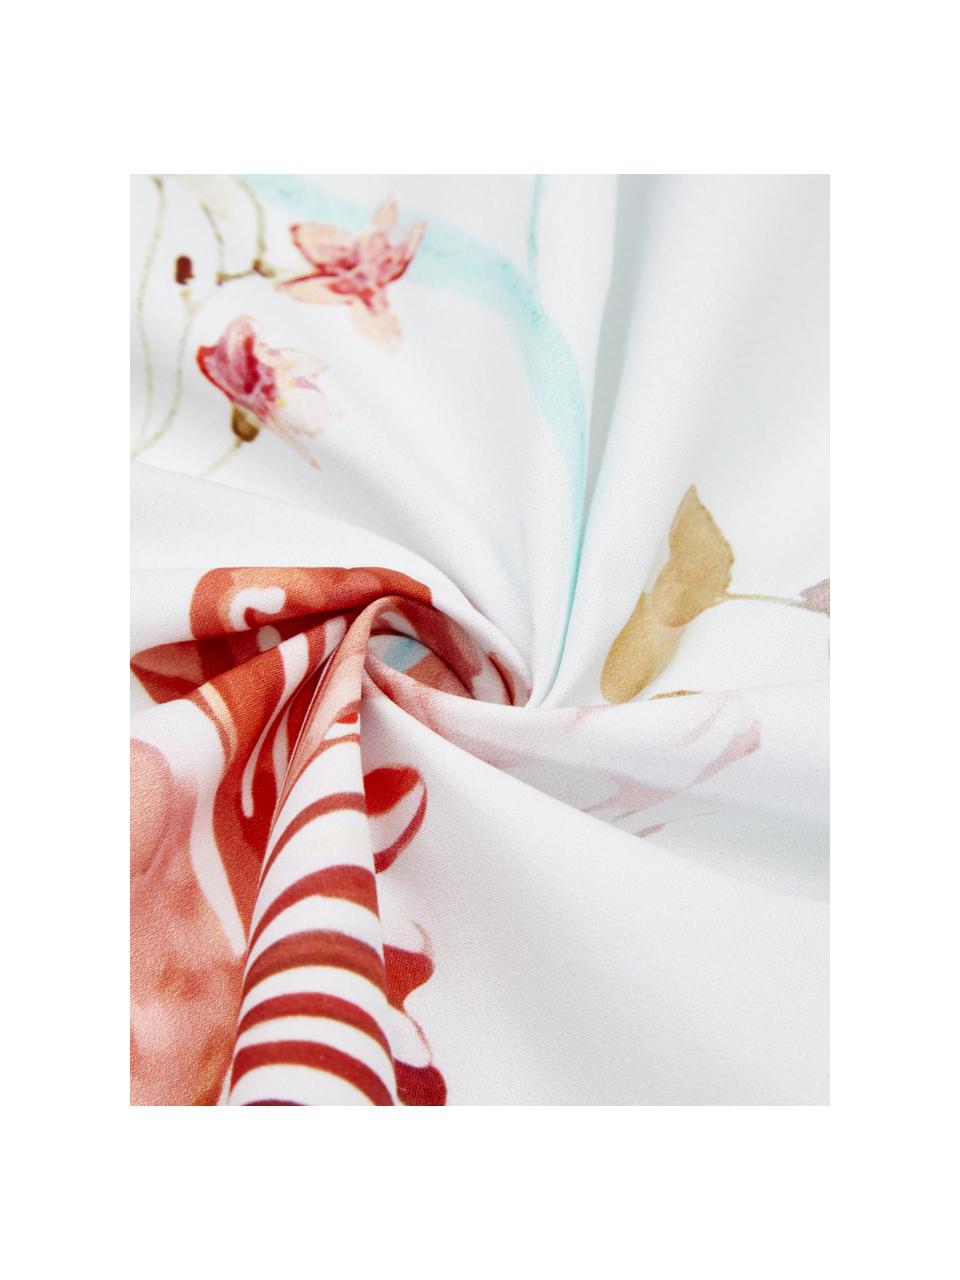 Parure copripiumino in cotone percalle con motivo floreale ad acquerello Prato, Multicolore, bianco, 200 x 200 cm + 2 federa 80 x 80 cm